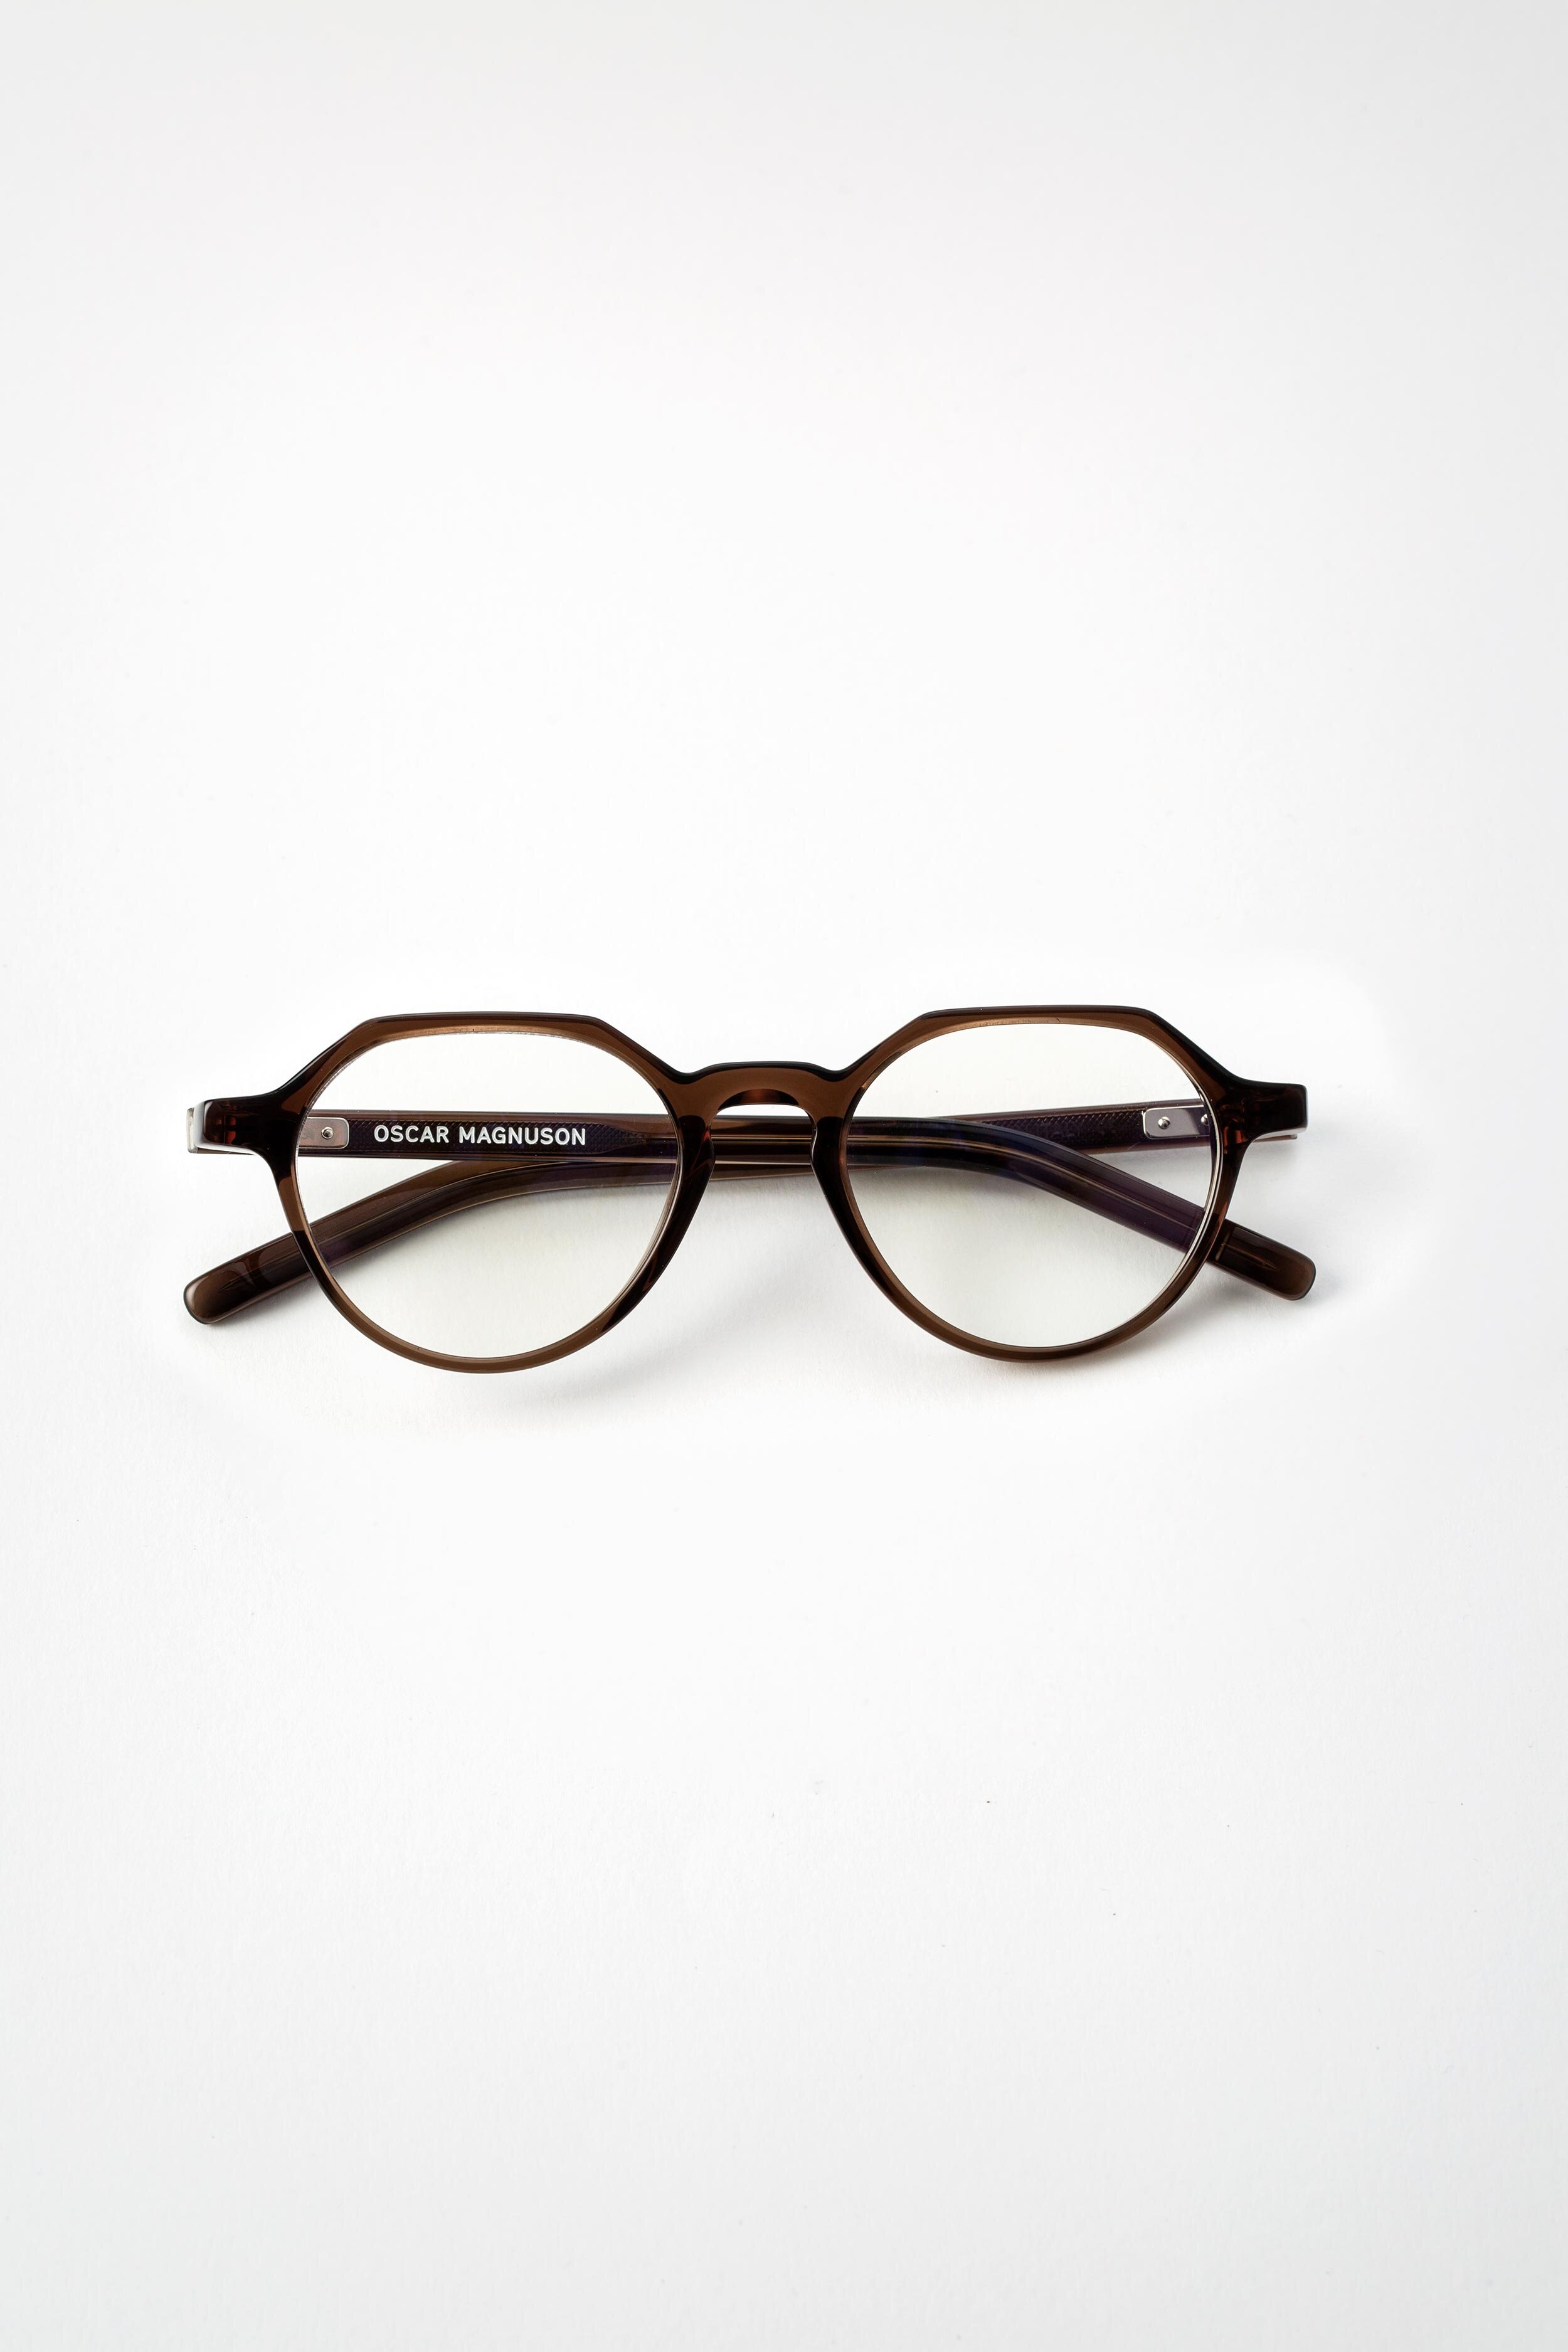 Sam by Oscar Magnuson - Eco Friendly Designer Glasses with Urban Green,  Round Drop-shaped Frames — OSCAR MAGNUSON